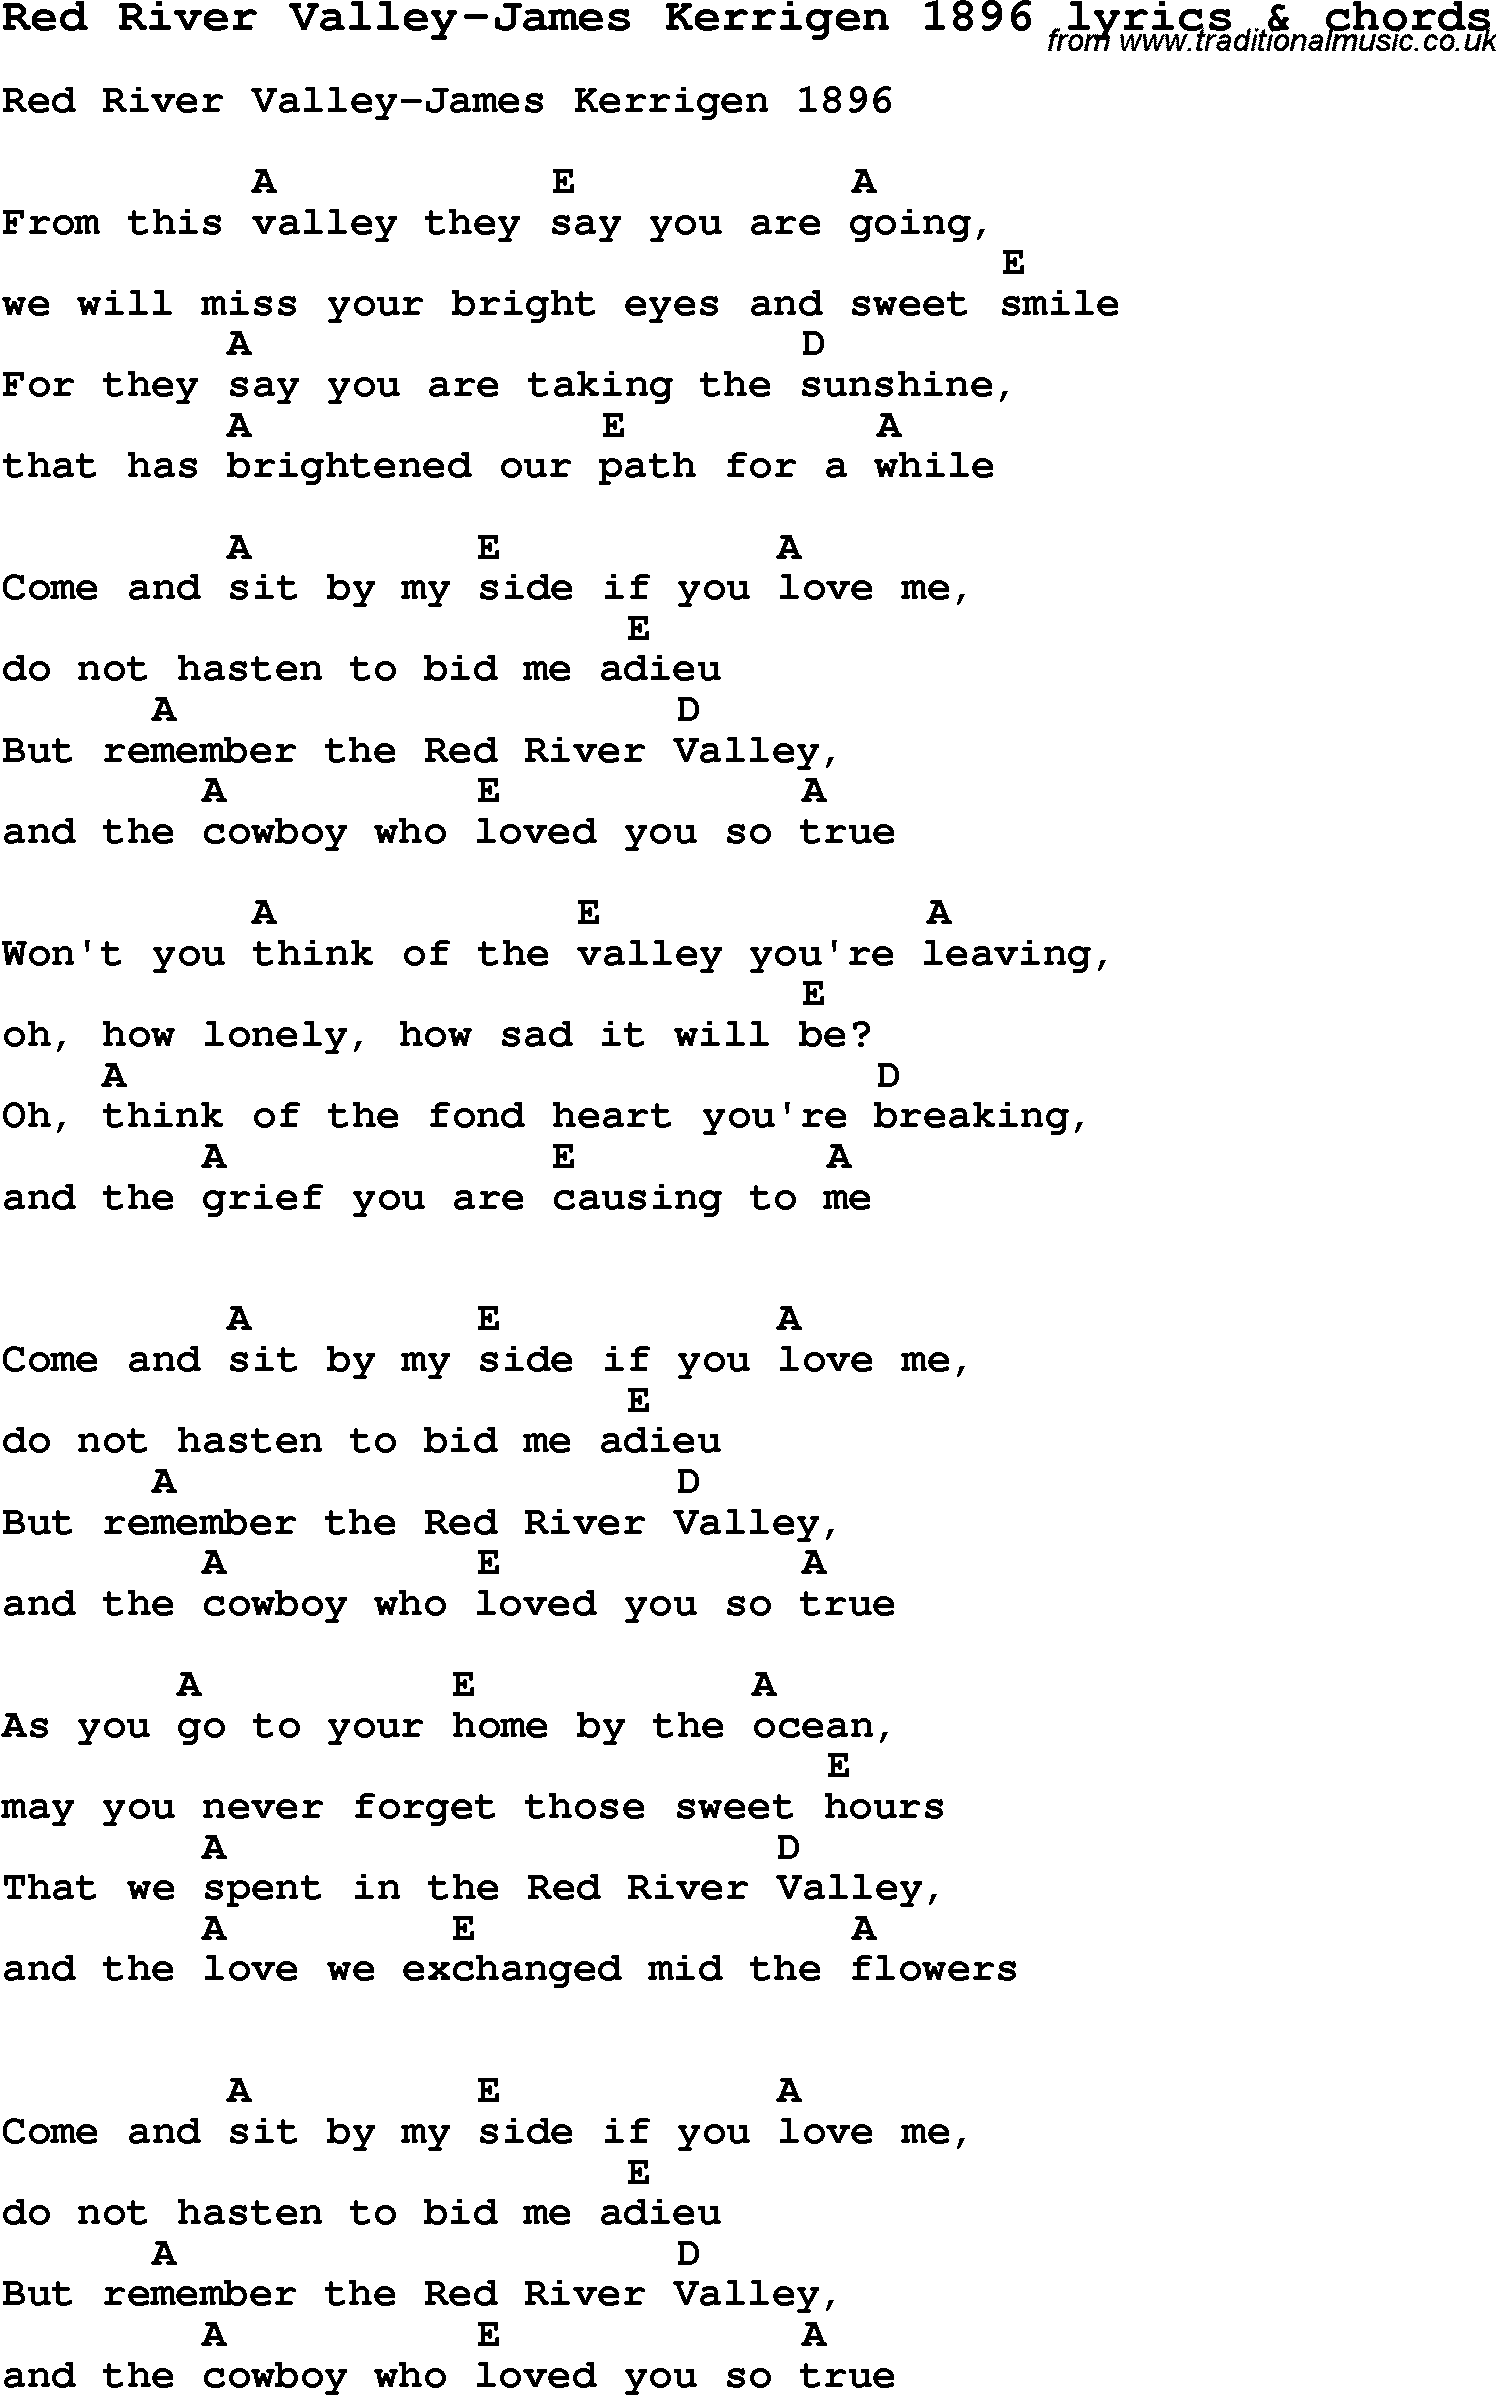 Love Song Lyrics for: Red River Valley-James Kerrigen 1896 with chords for Ukulele, Guitar Banjo etc.